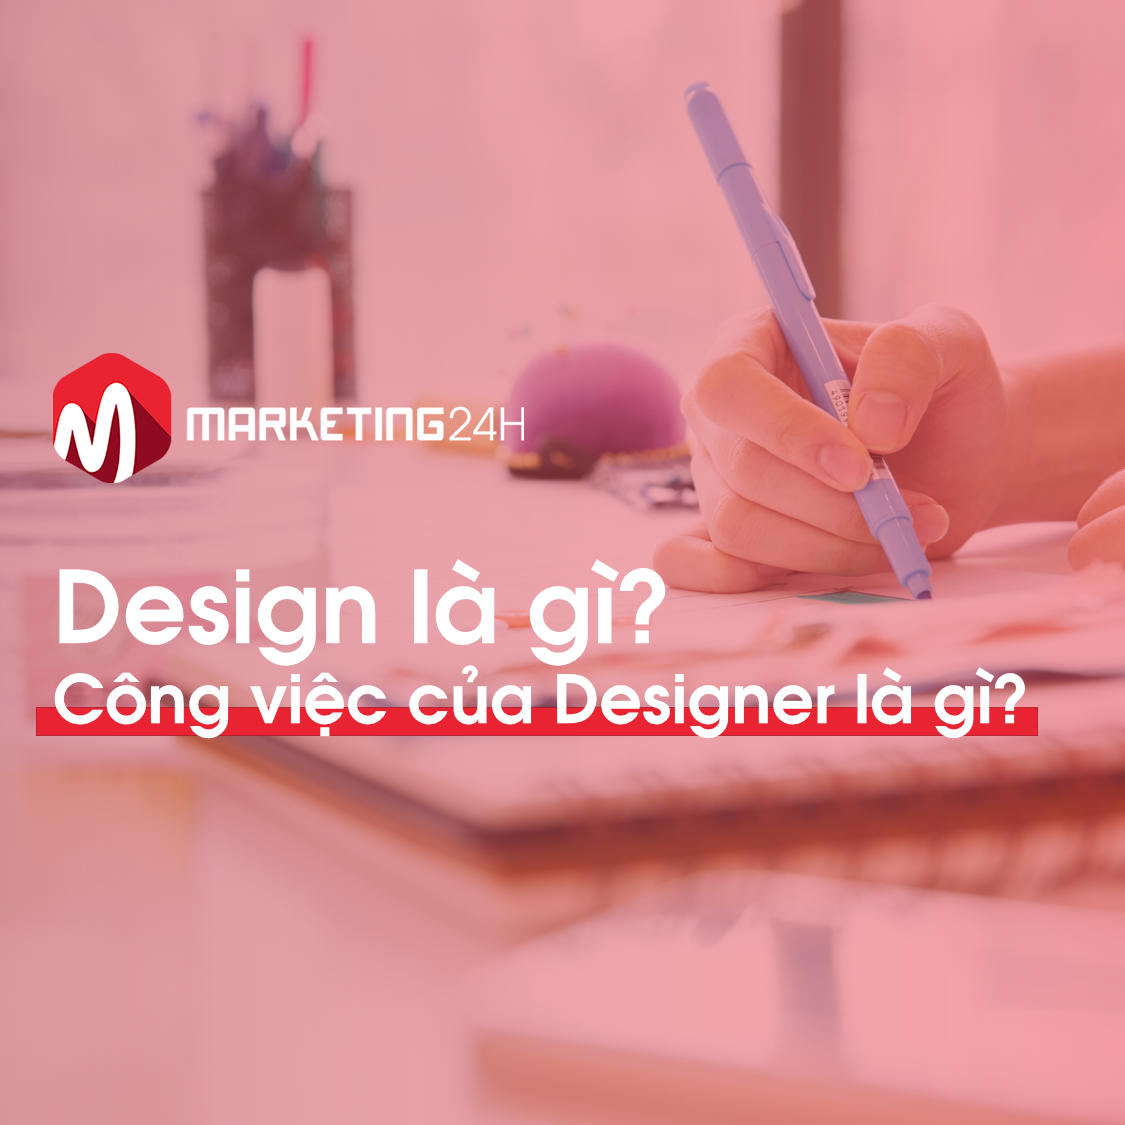 Design là gì? Công việc của Designer là gì?